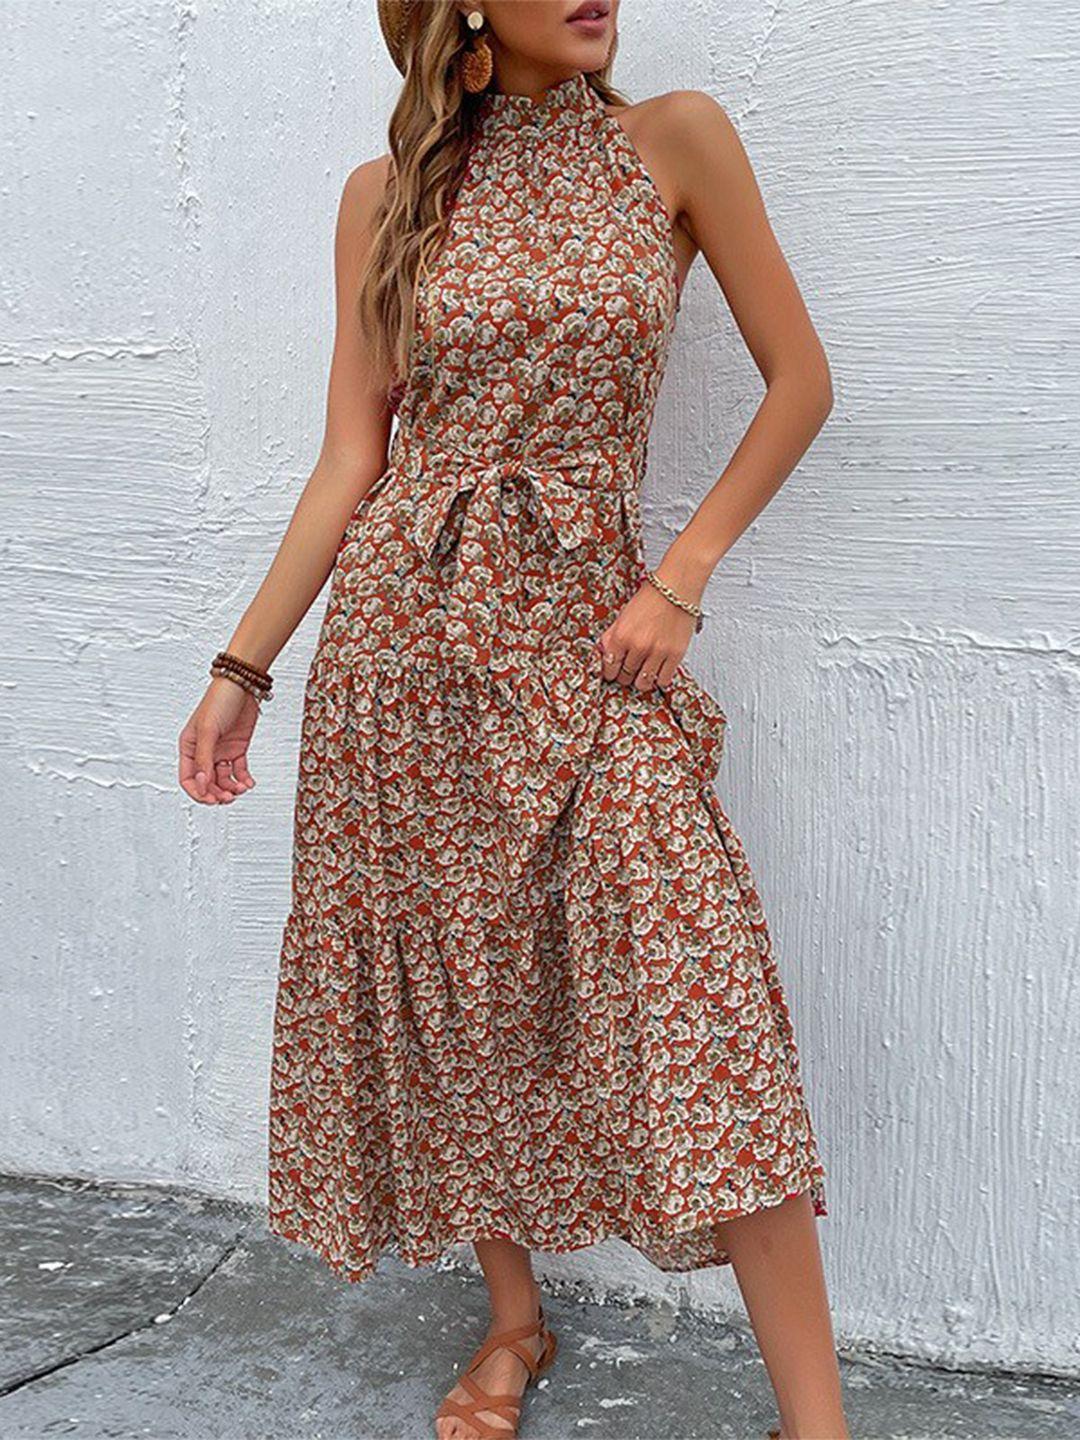 stylecast brown floral print maxi midi dress